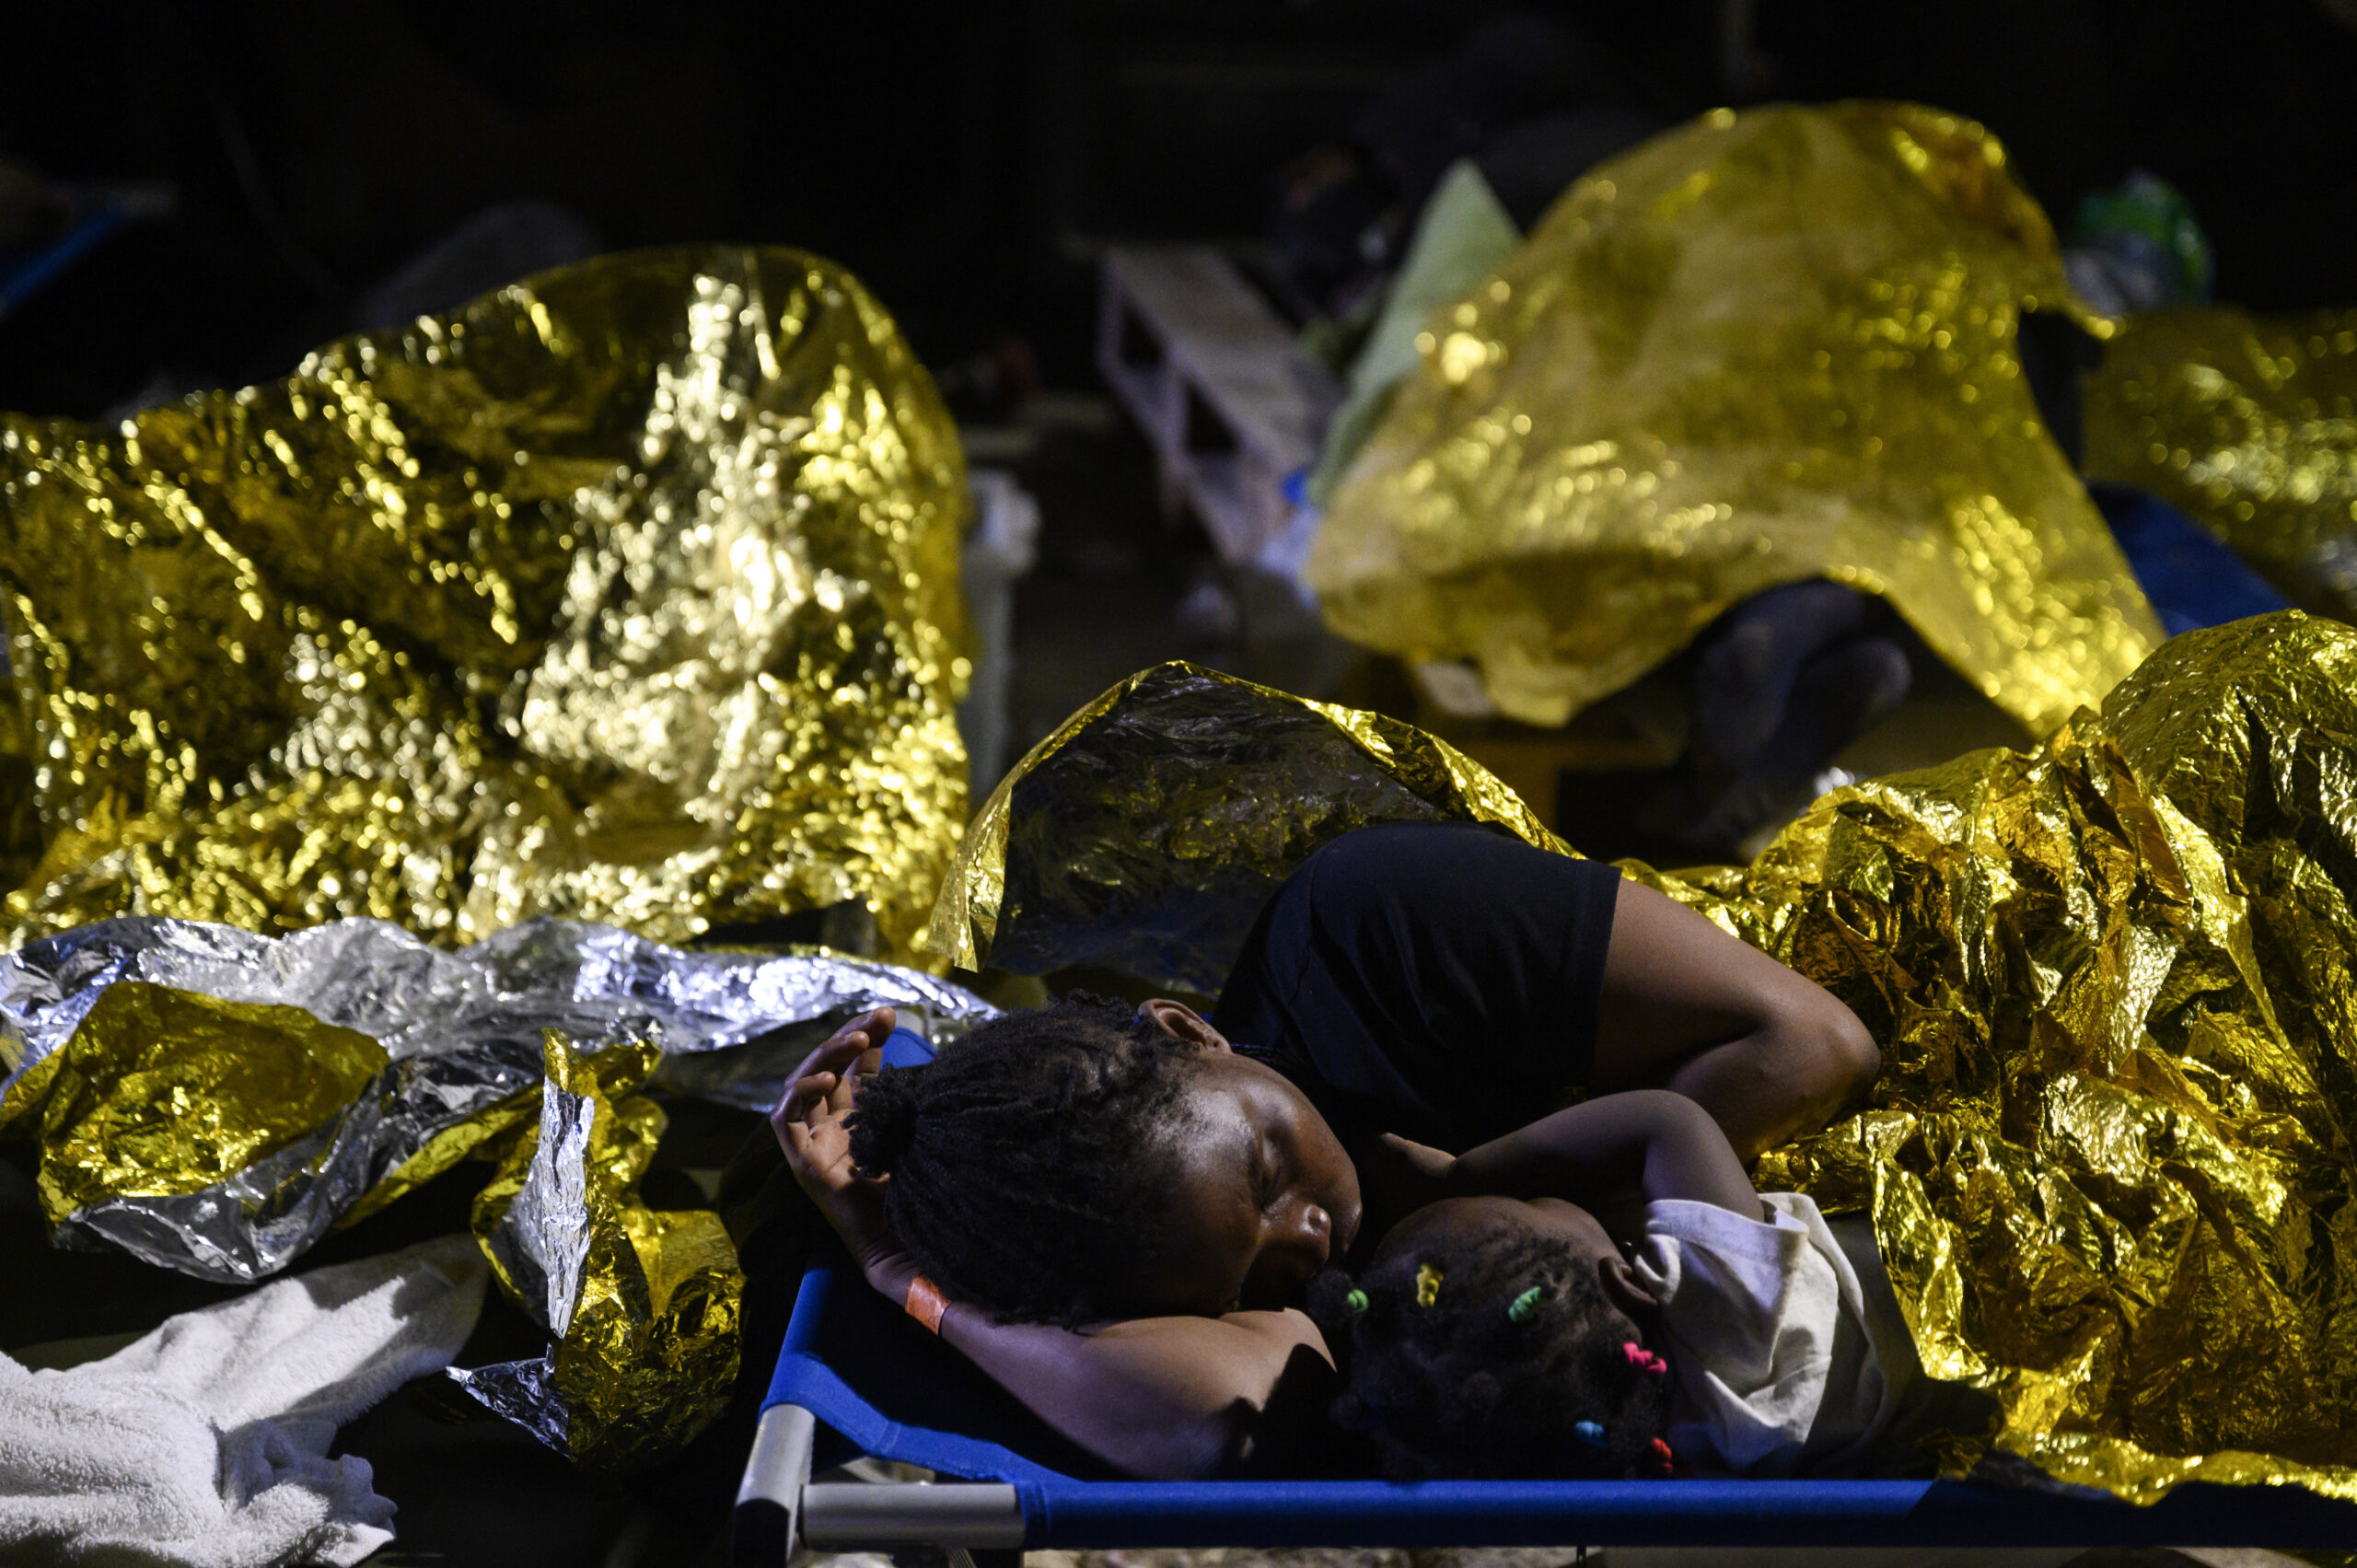 Ιταλία: Νεογέννητο εντοπίστηκε νεκρό σε βάρκα με μετανάστες στα ανοικτά της Λαμπεντούζα